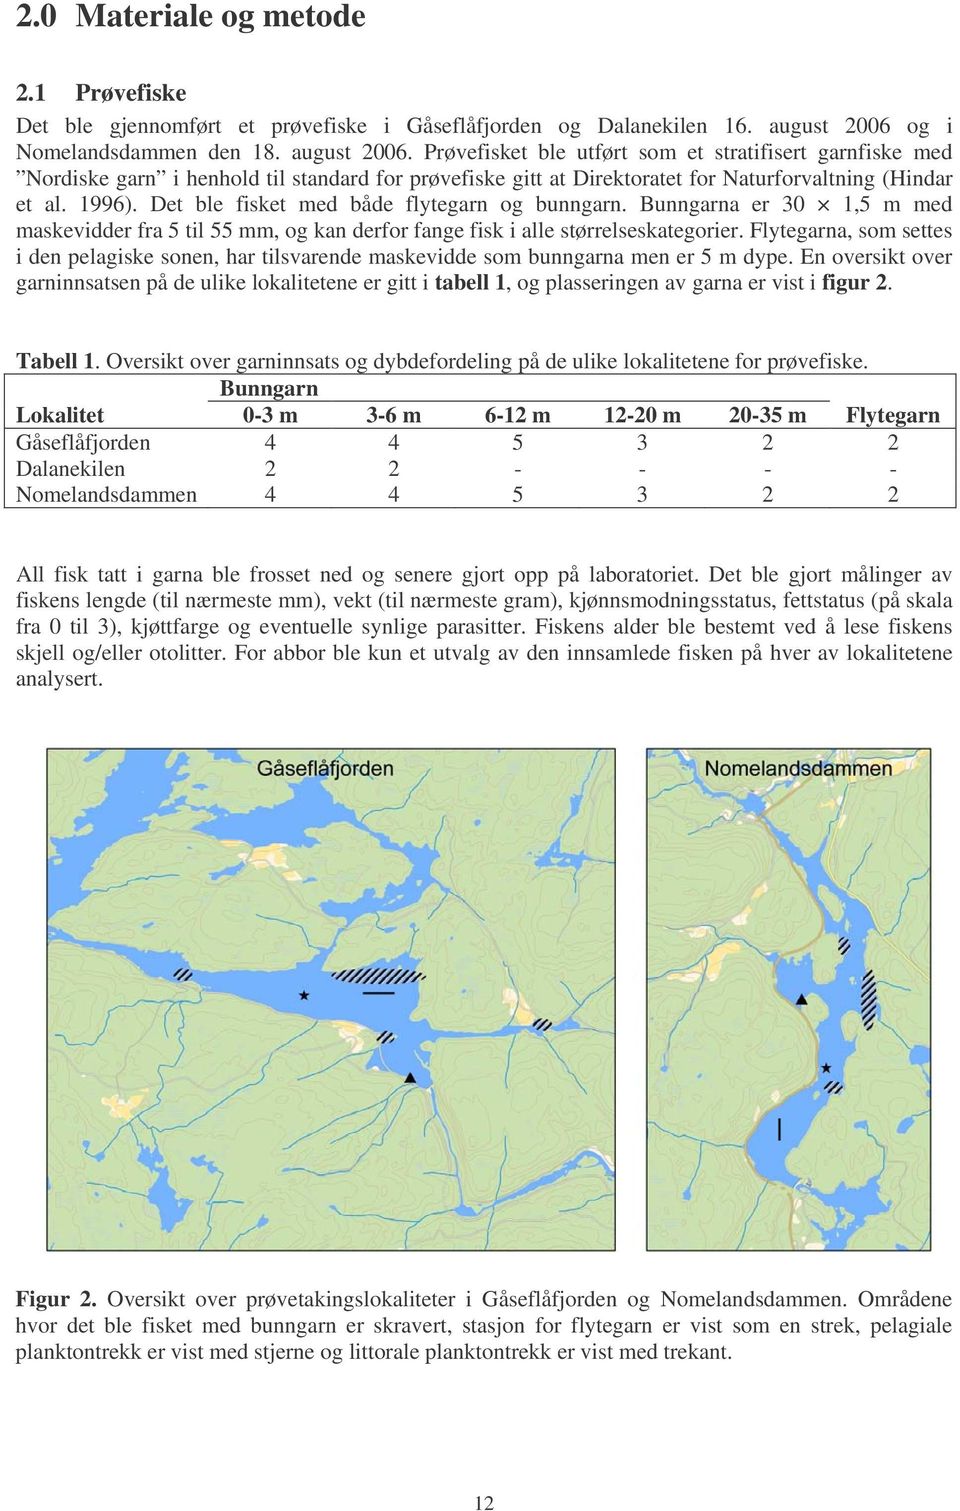 Prøvefisket ble utført som et stratifisert garnfiske med Nordiske garn i henhold til standard for prøvefiske gitt at Direktoratet for Naturforvaltning (Hindar et al. 1996).